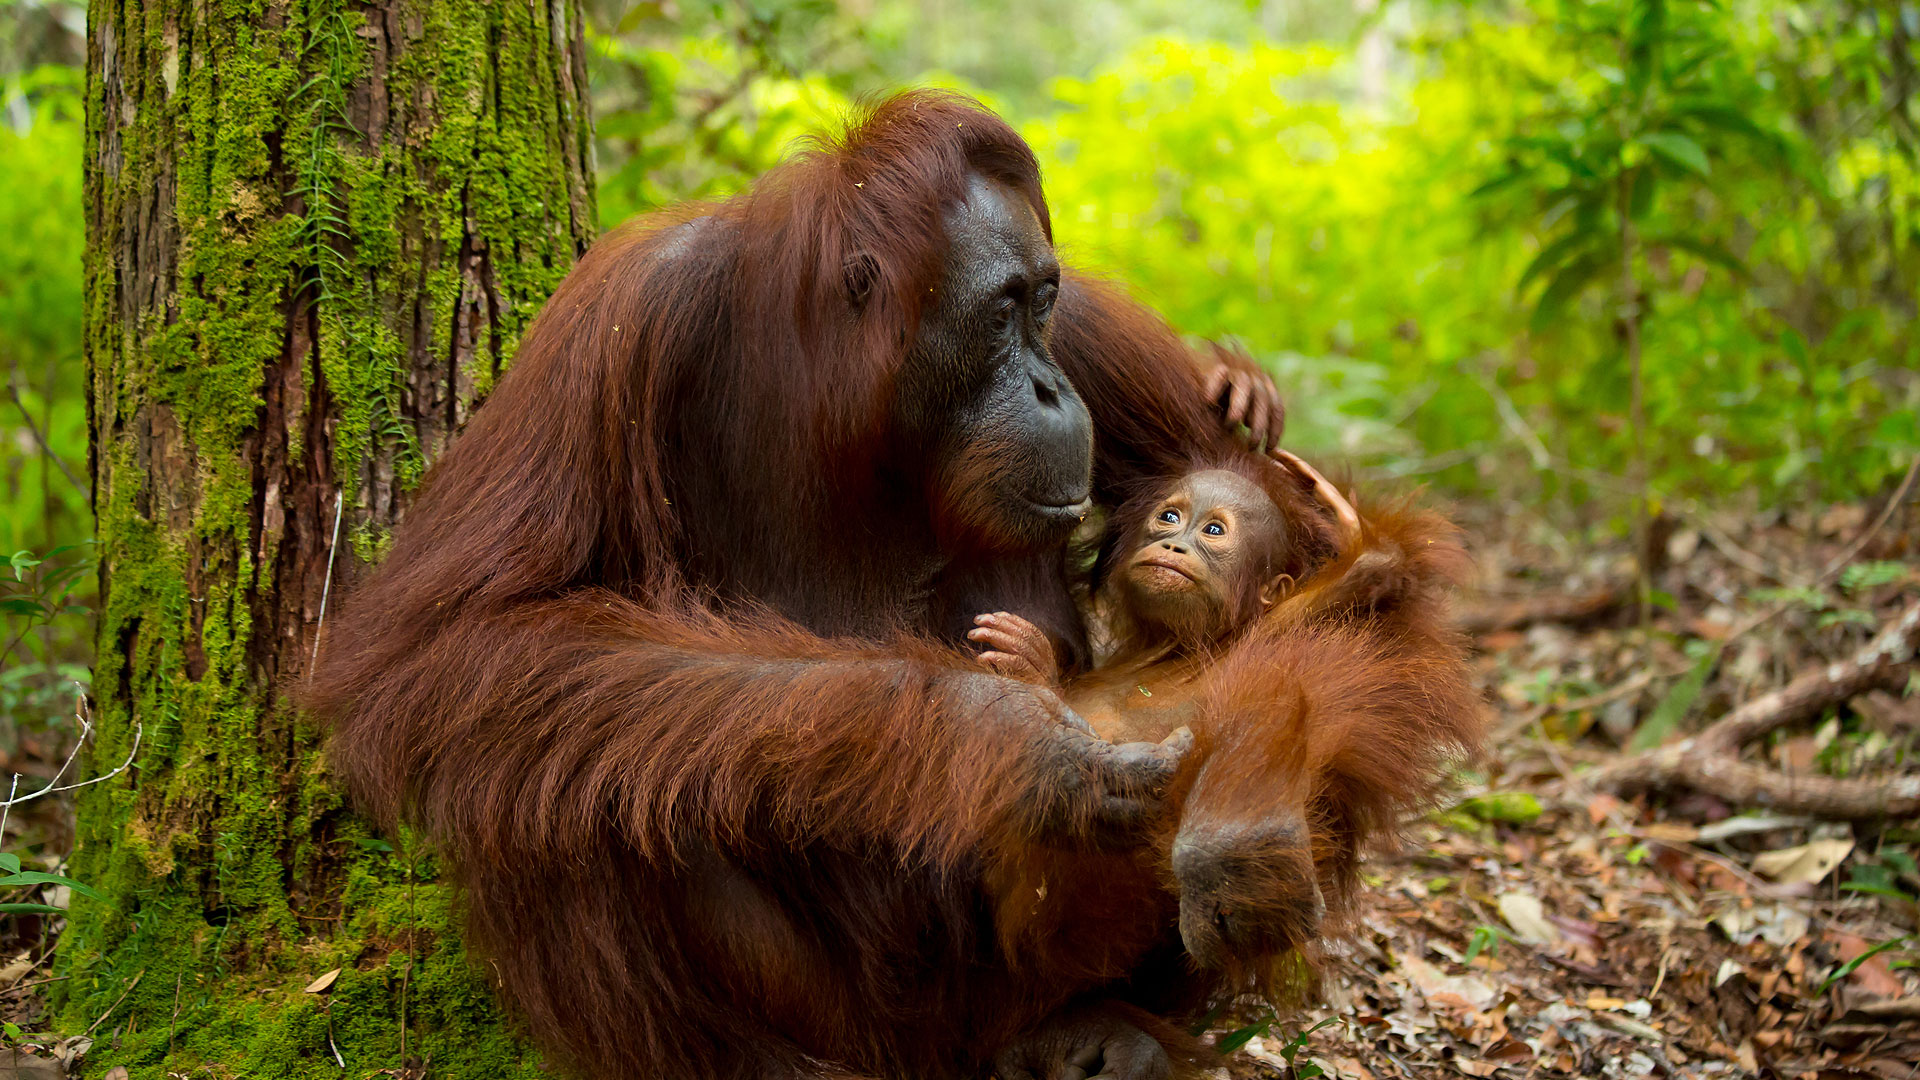 Les derniers orangs-outans de Bornéo filmés dans leur habitat naturel !